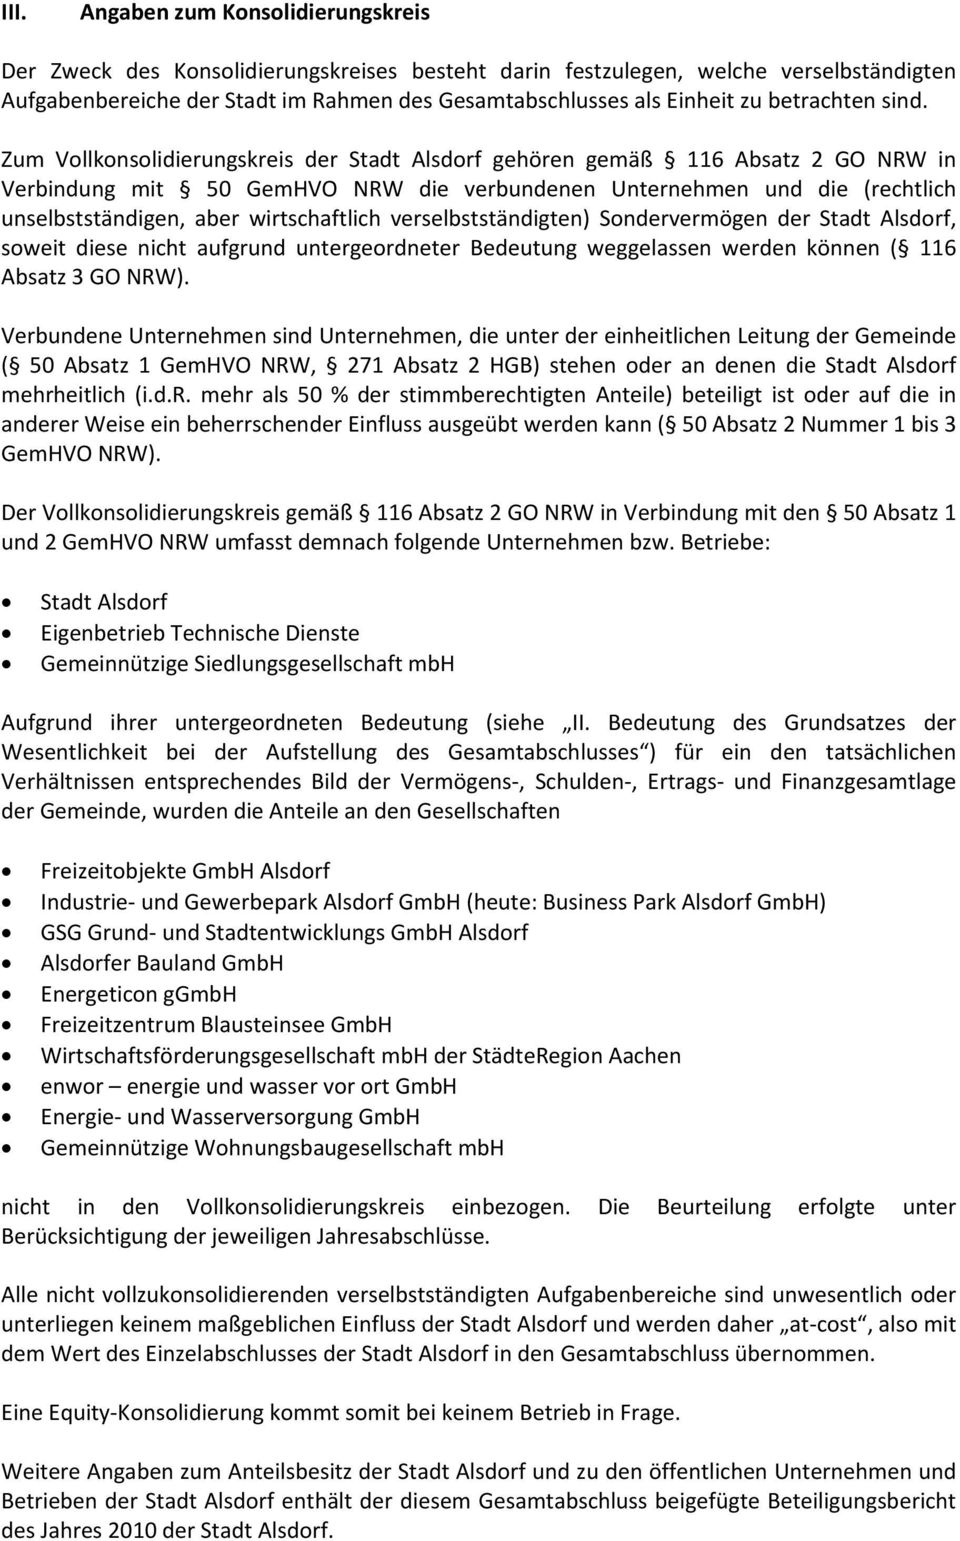 Zum Vollkonsolidierungskreis der Stadt Alsdorf gehören gemäß 116 Absatz 2 GO NRW in Verbindung mit 50 GemHVO NRW die verbundenen Unternehmen und die (rechtlich unselbstständigen, aber wirtschaftlich